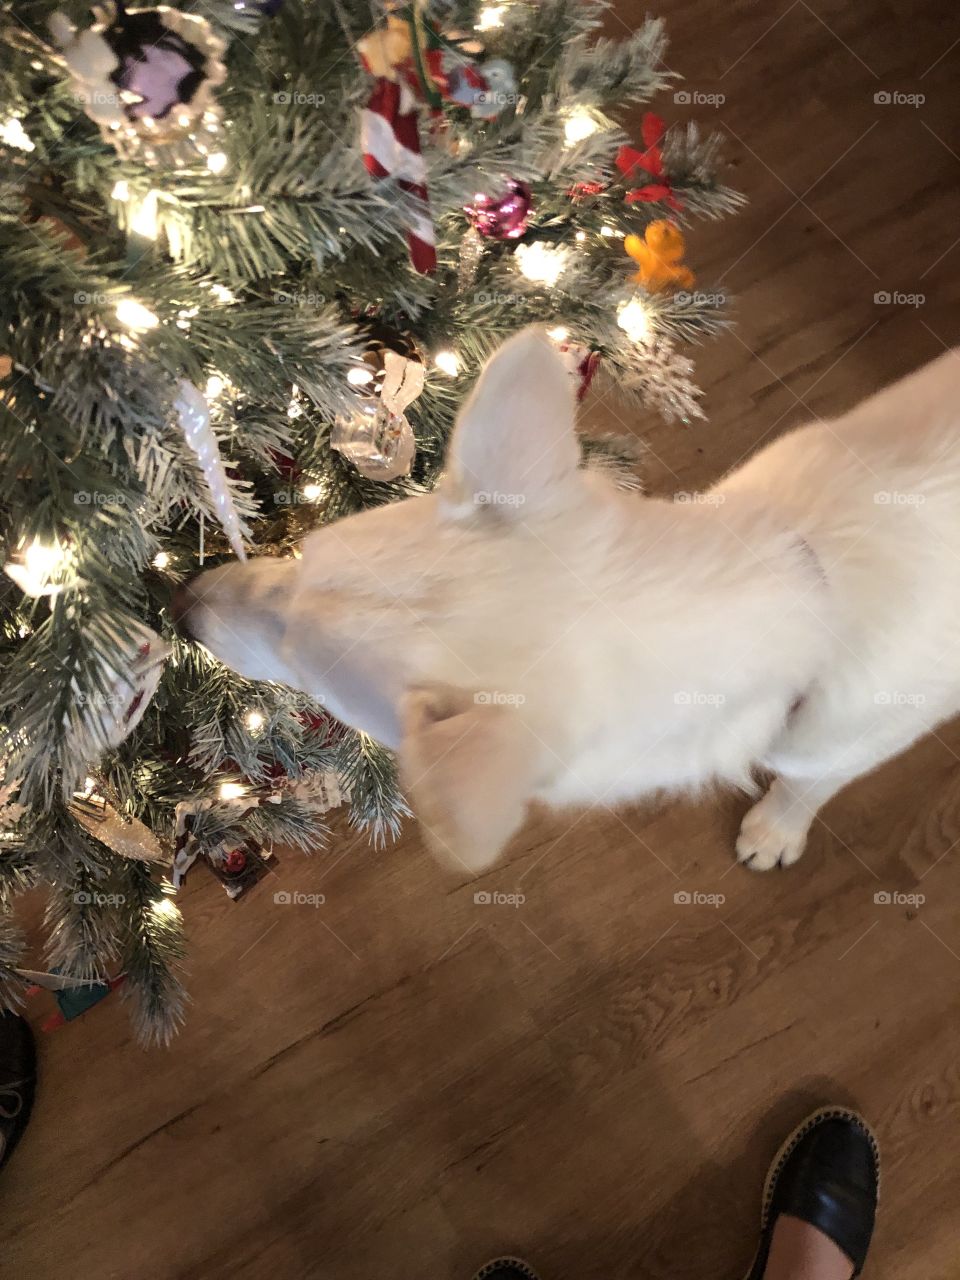 White dog and Christmas tree